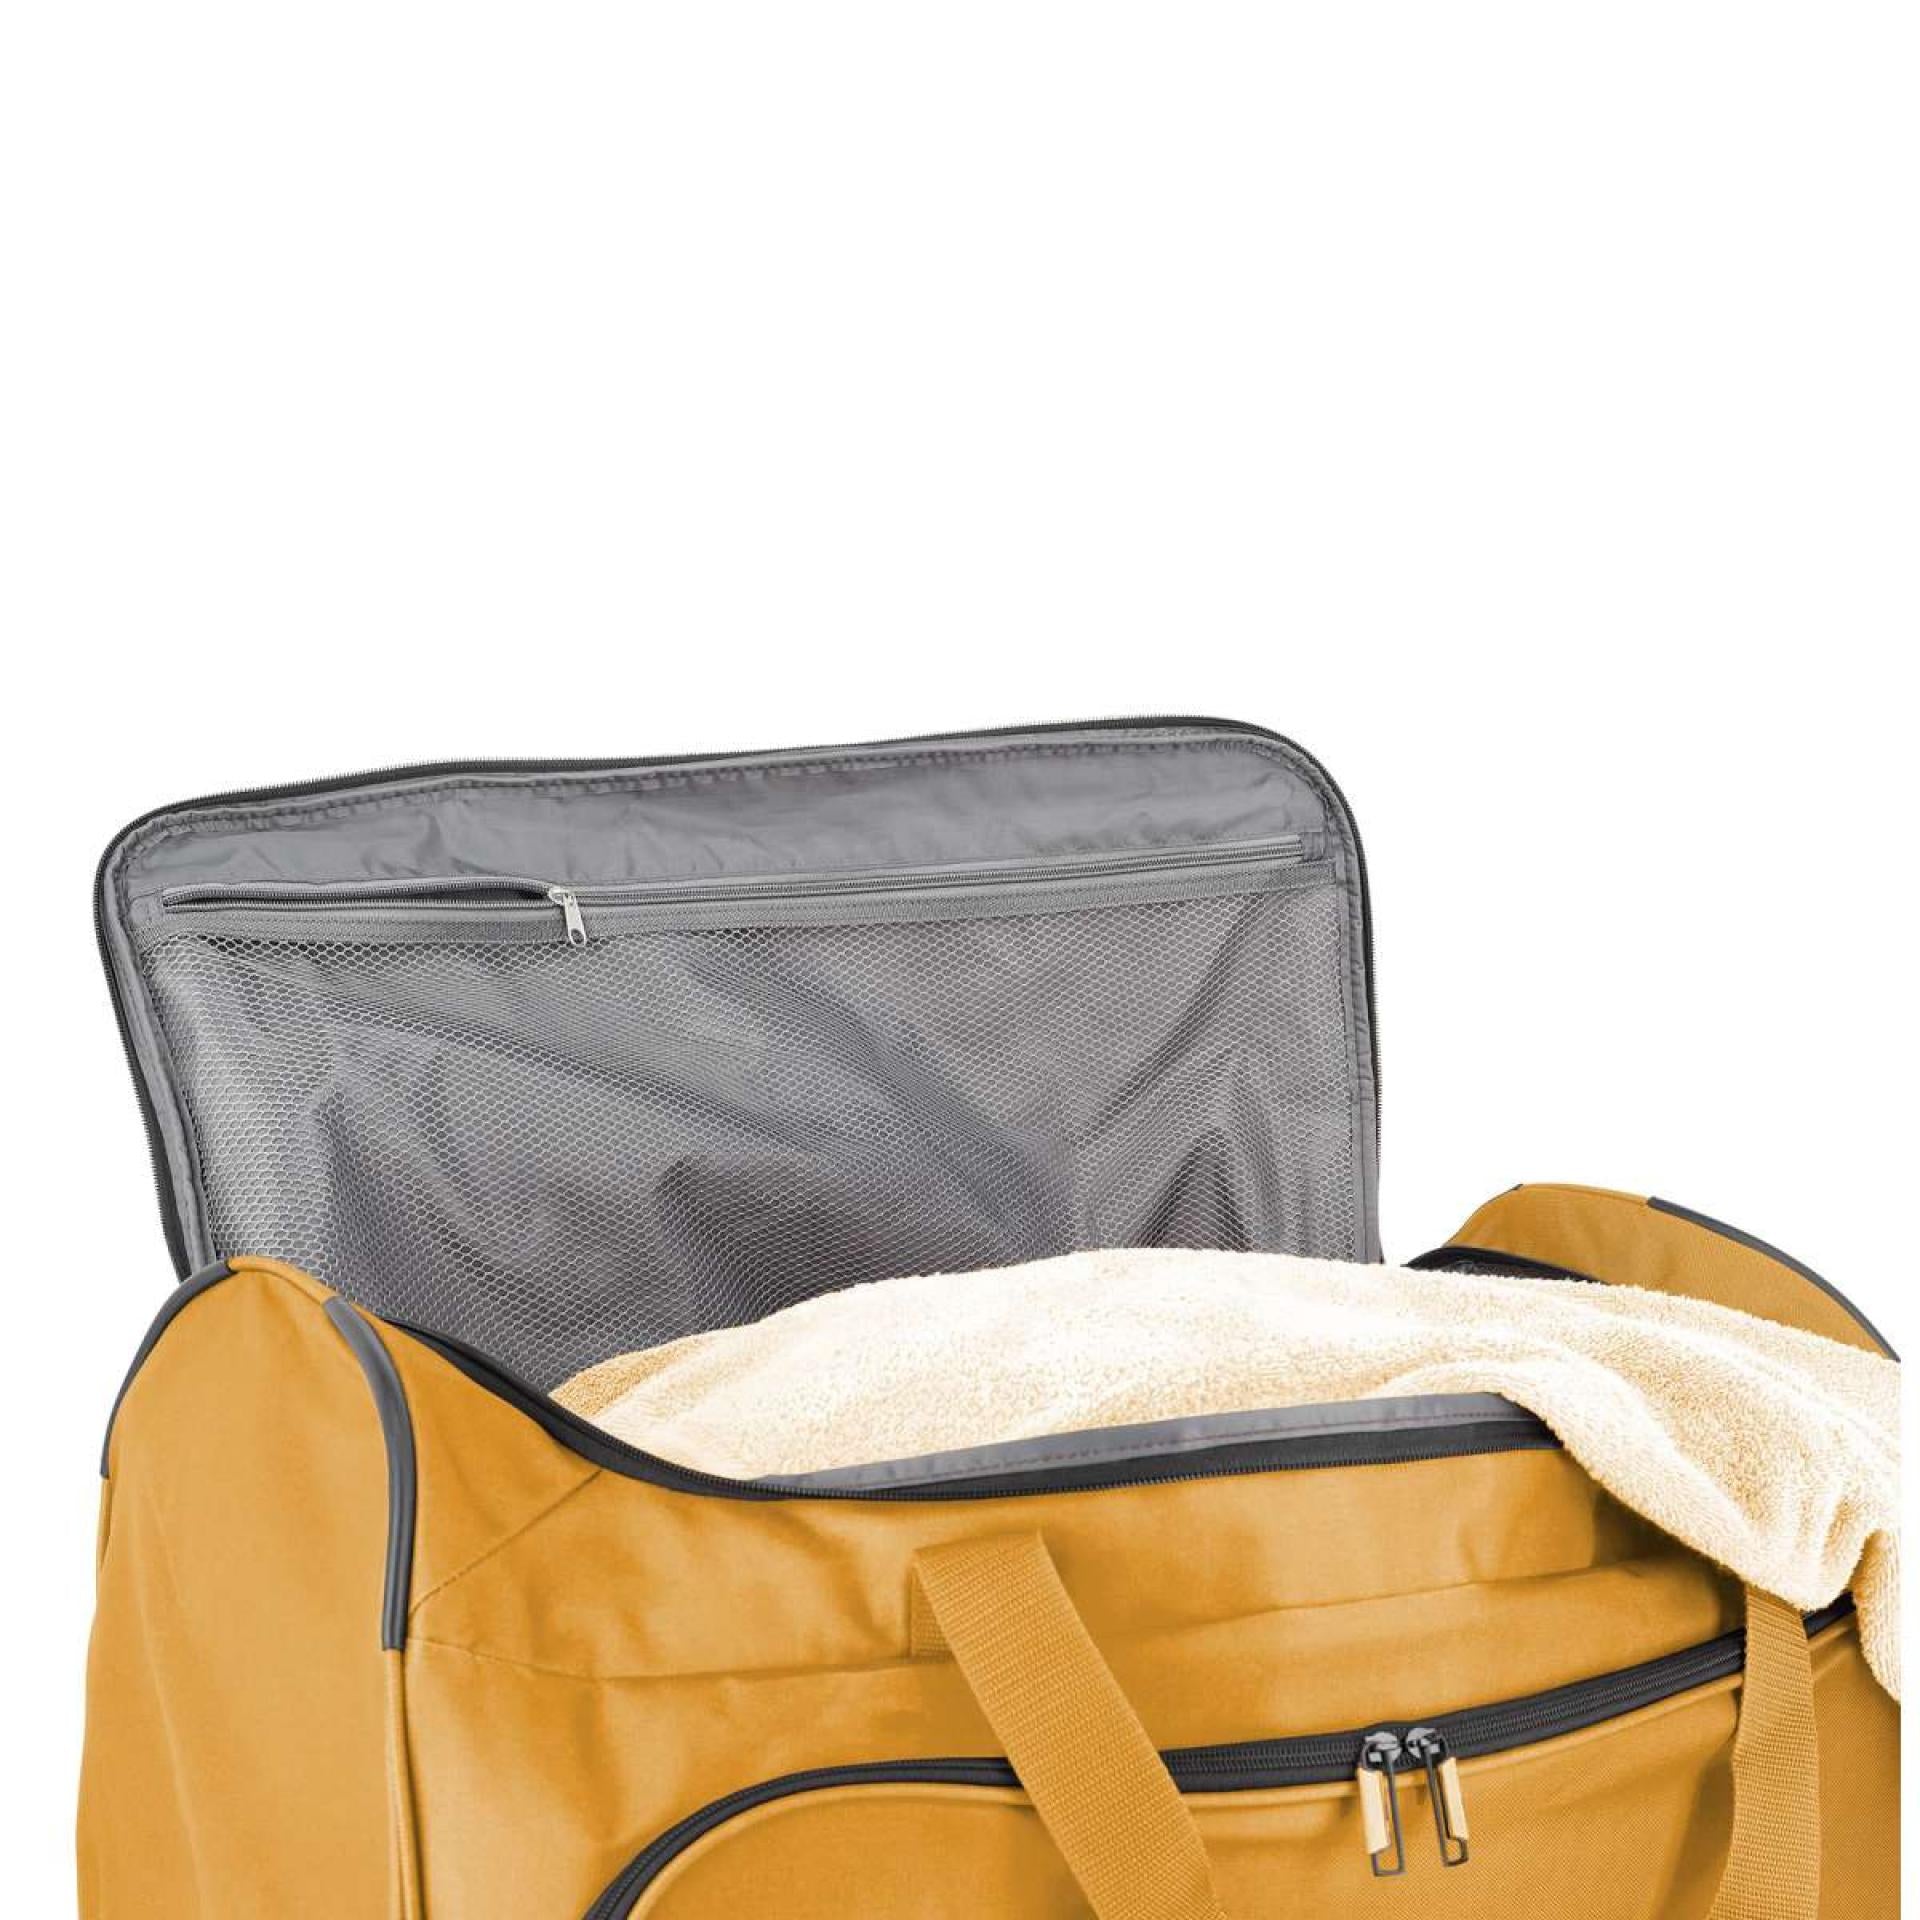 Travelite BASICS FRESH Rollenreisetasche - Variante: Gelb